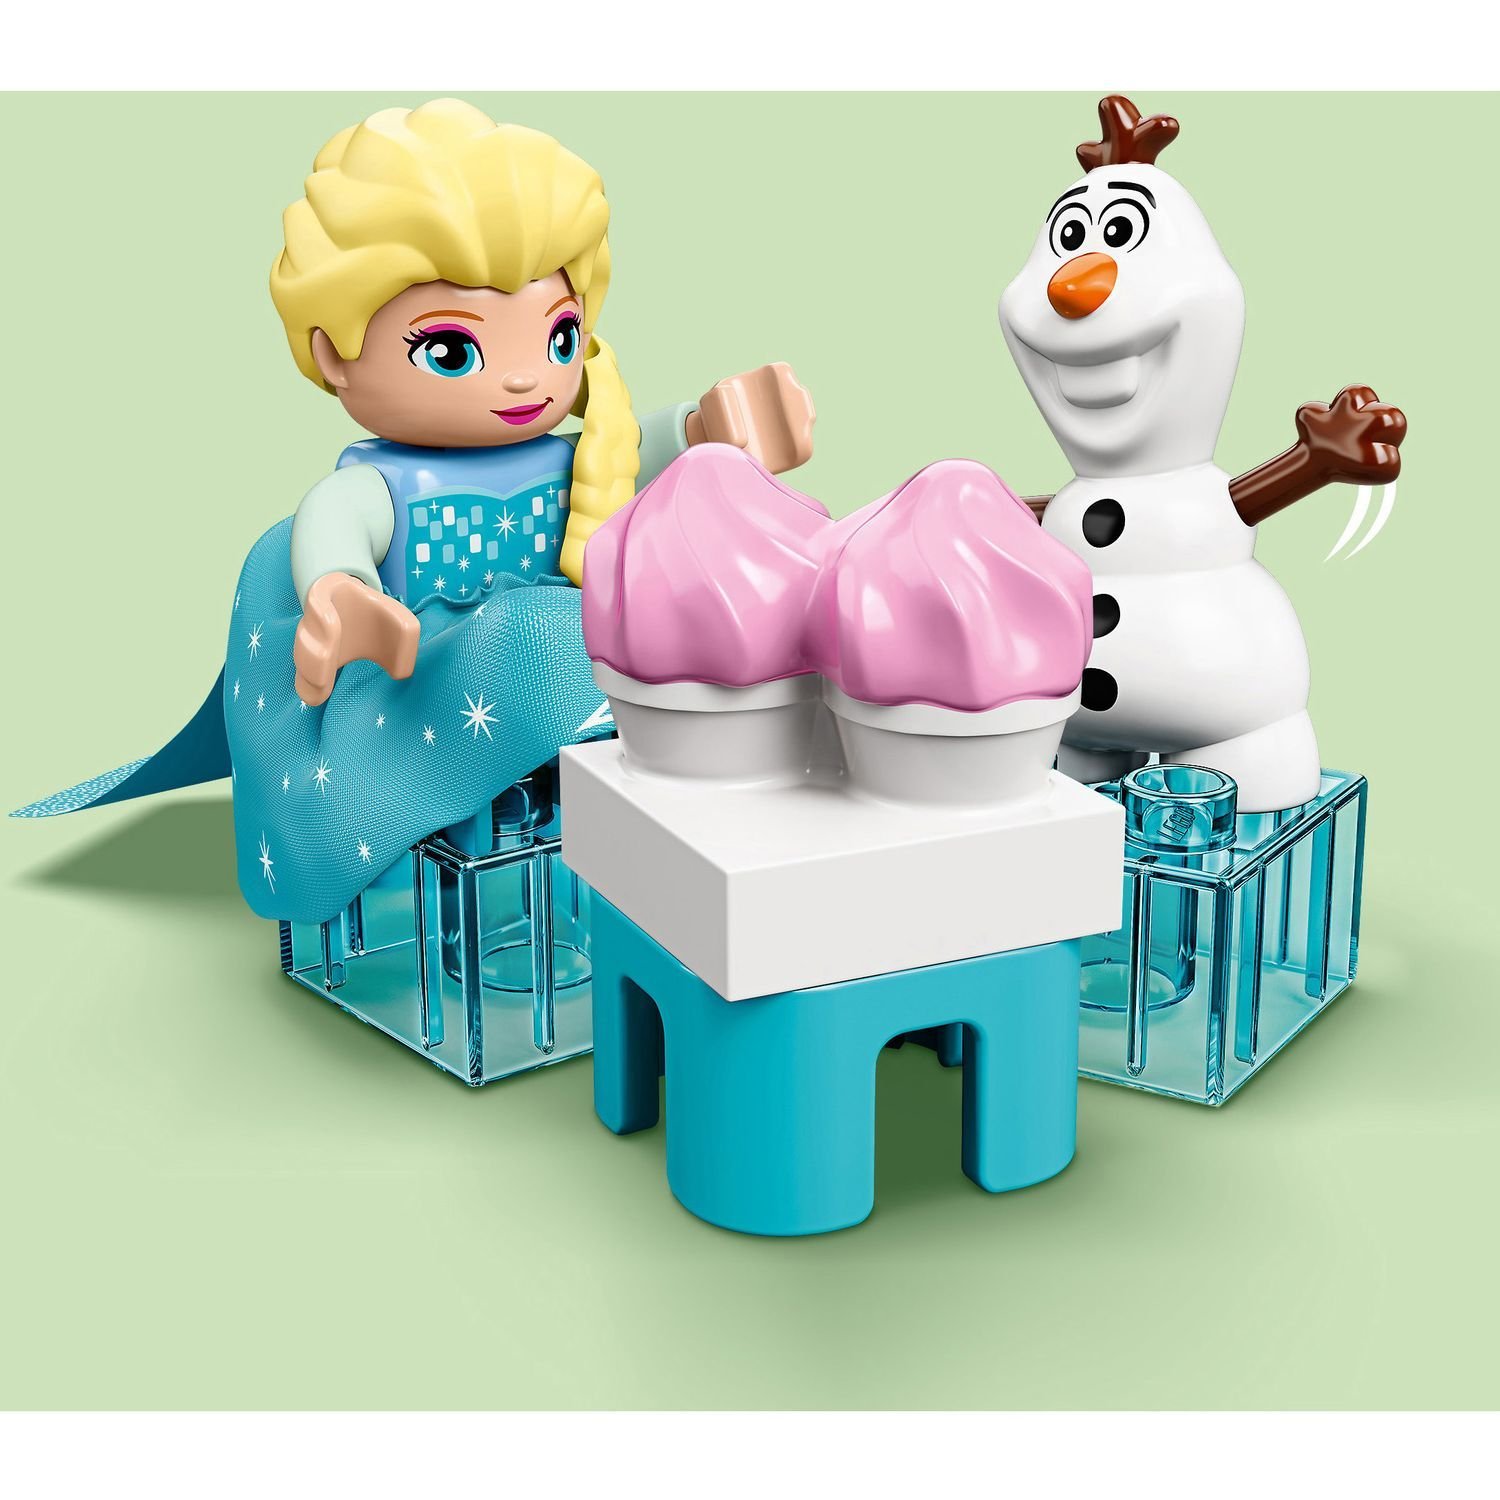 Конструктор LEGO DUPLO Disney Frozen II 10920 Чаепитие у Эльзы и Олафа